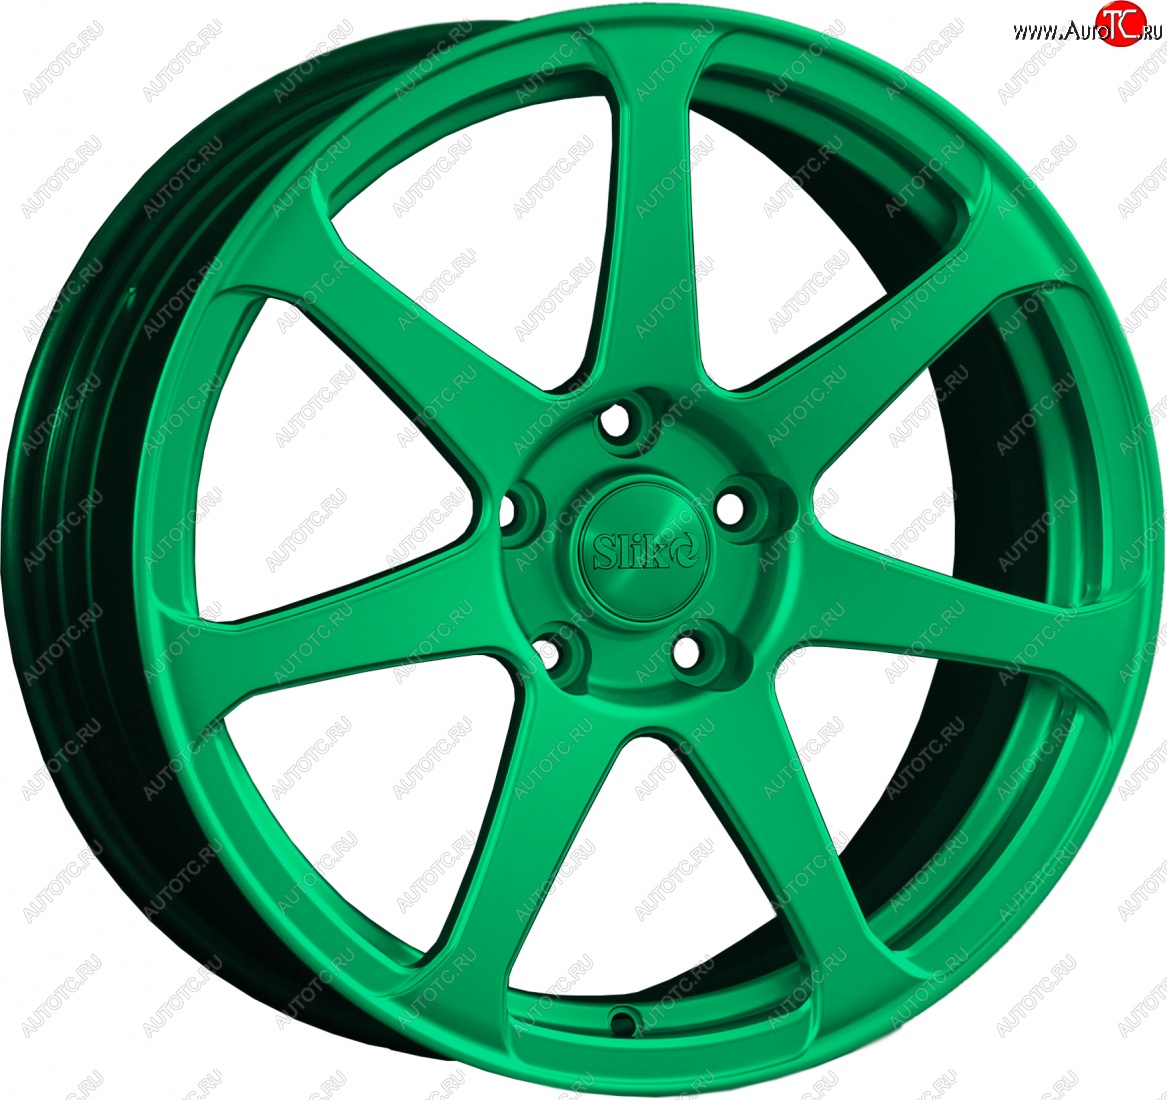 14 499 р. Кованый диск Slik classik R17x7.5 Candy Green изумрудно-зеленый 7.5x17 Toyota Allion T240 седан дорестайлинг (2001-2004) 5x100.0xDIA54.1xET45.0 (Цвет: Candy Green изумрудно-зеленый 7.5x17)